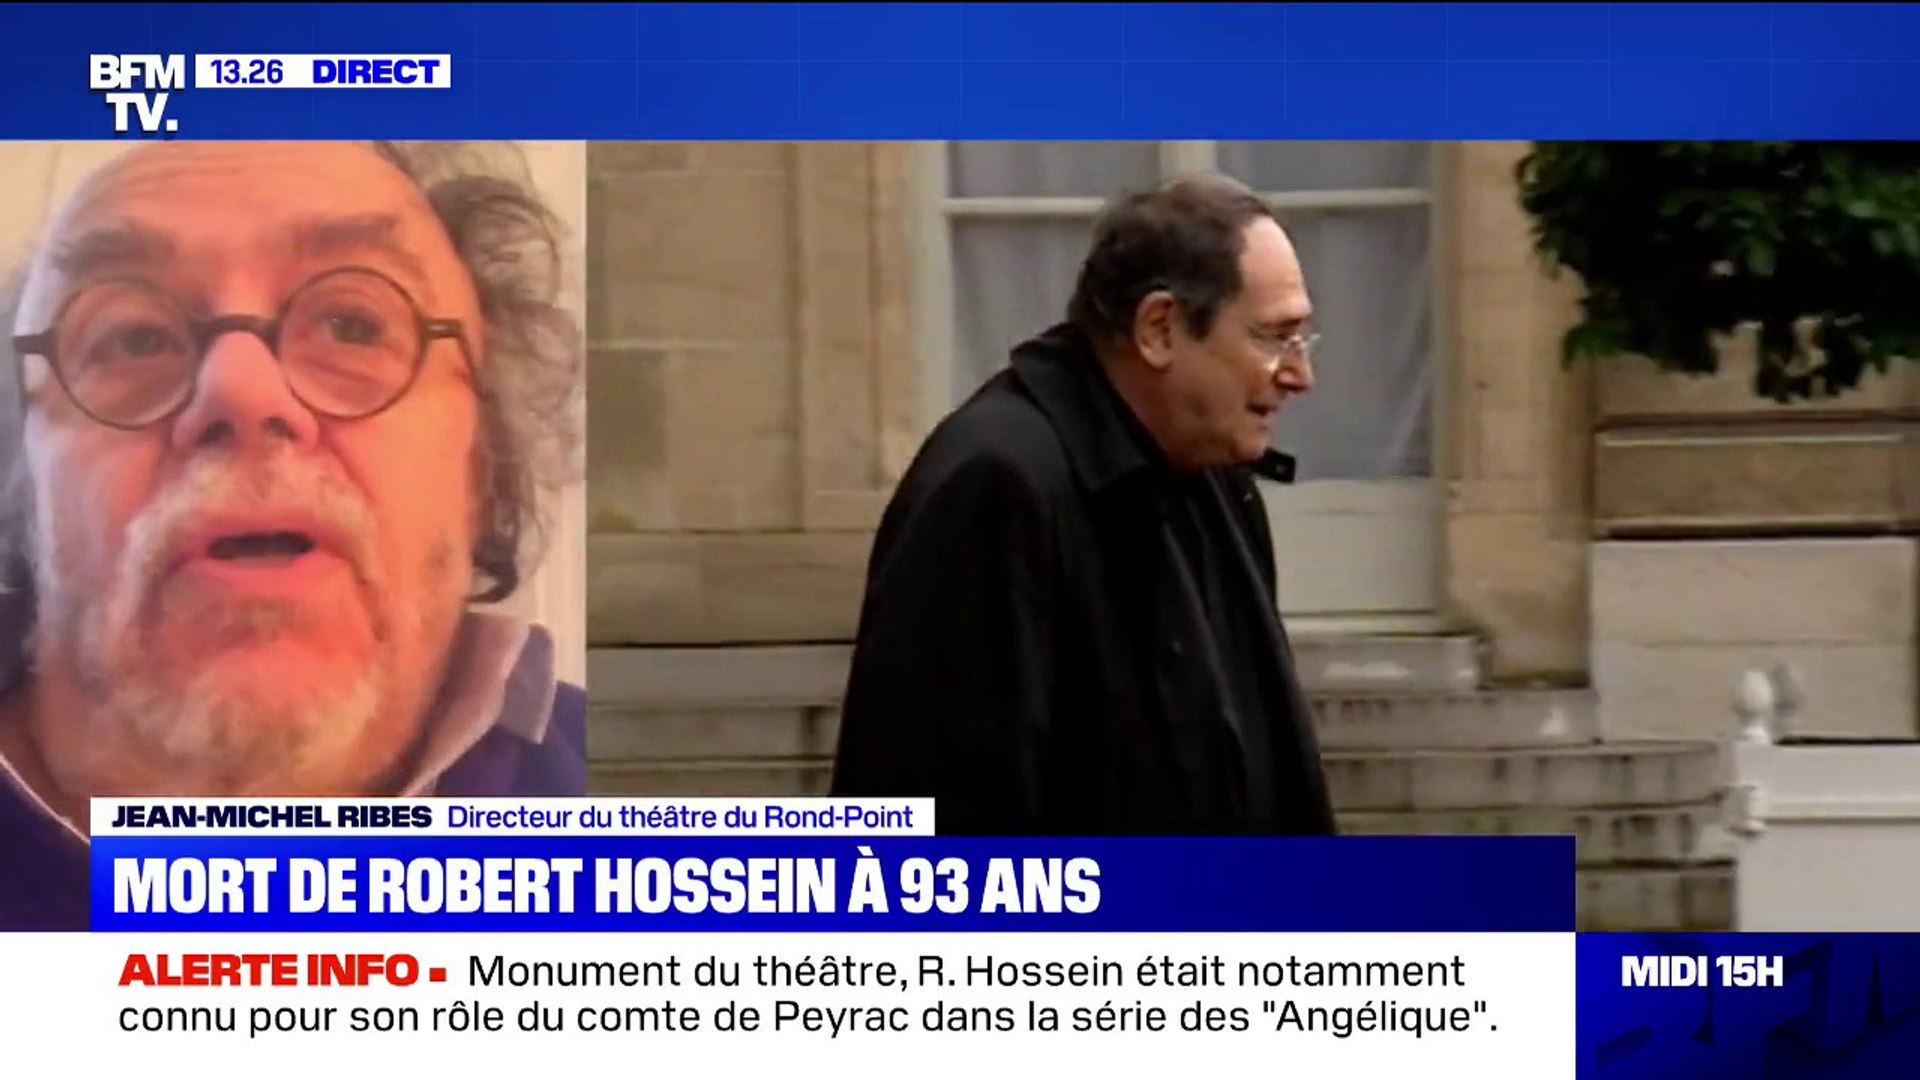 Mort de Robert Hossein: Jean-Michel Ribes se souvient "d'un homme solaire"  - Vidéo Dailymotion